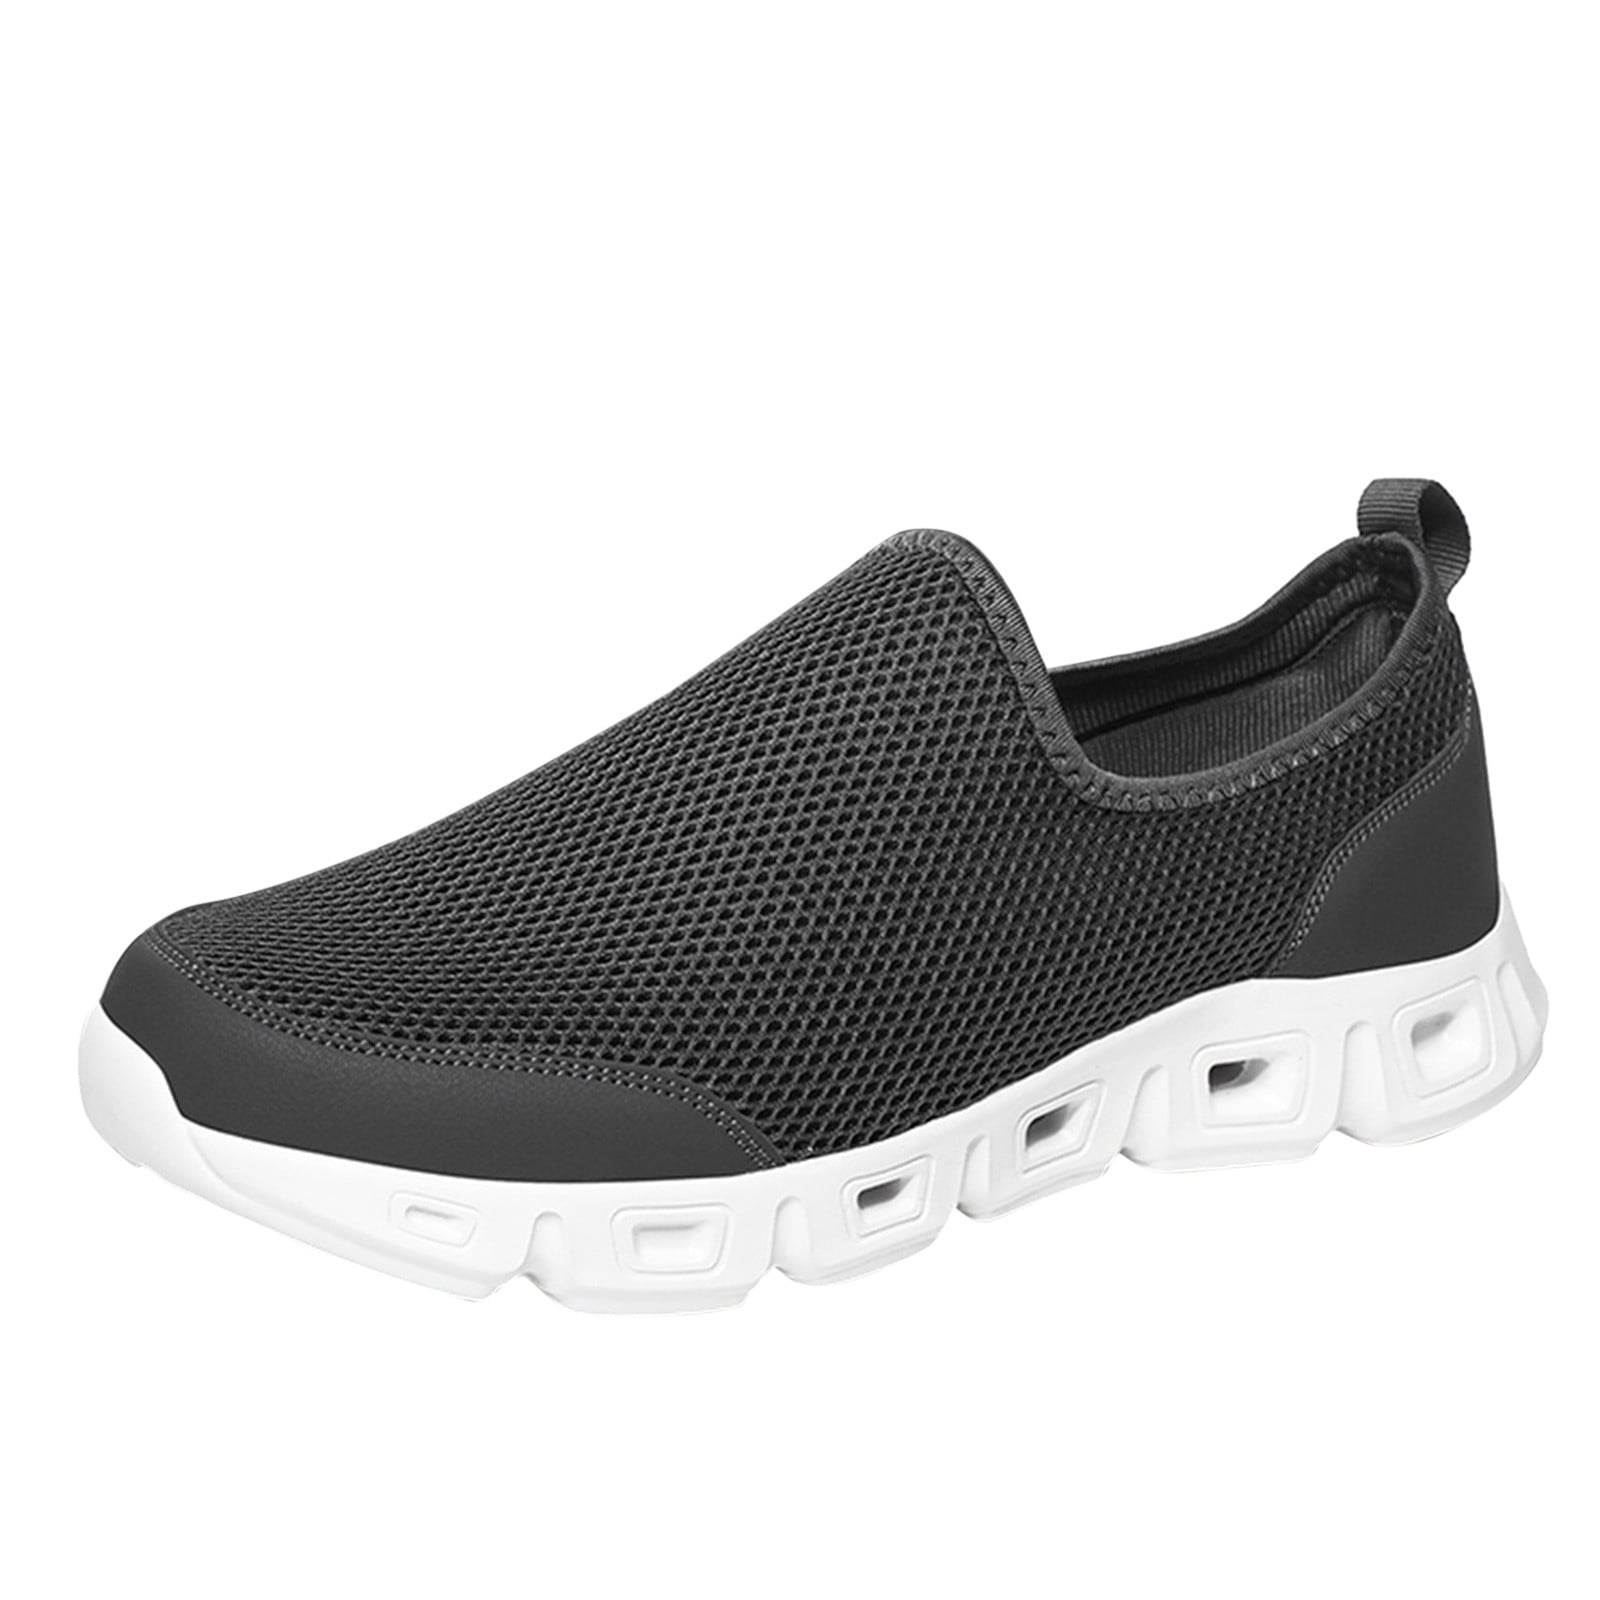 HSMQHJWE Orthopedic Walking Shoes For Men Sneaker Boots For Men Men ...